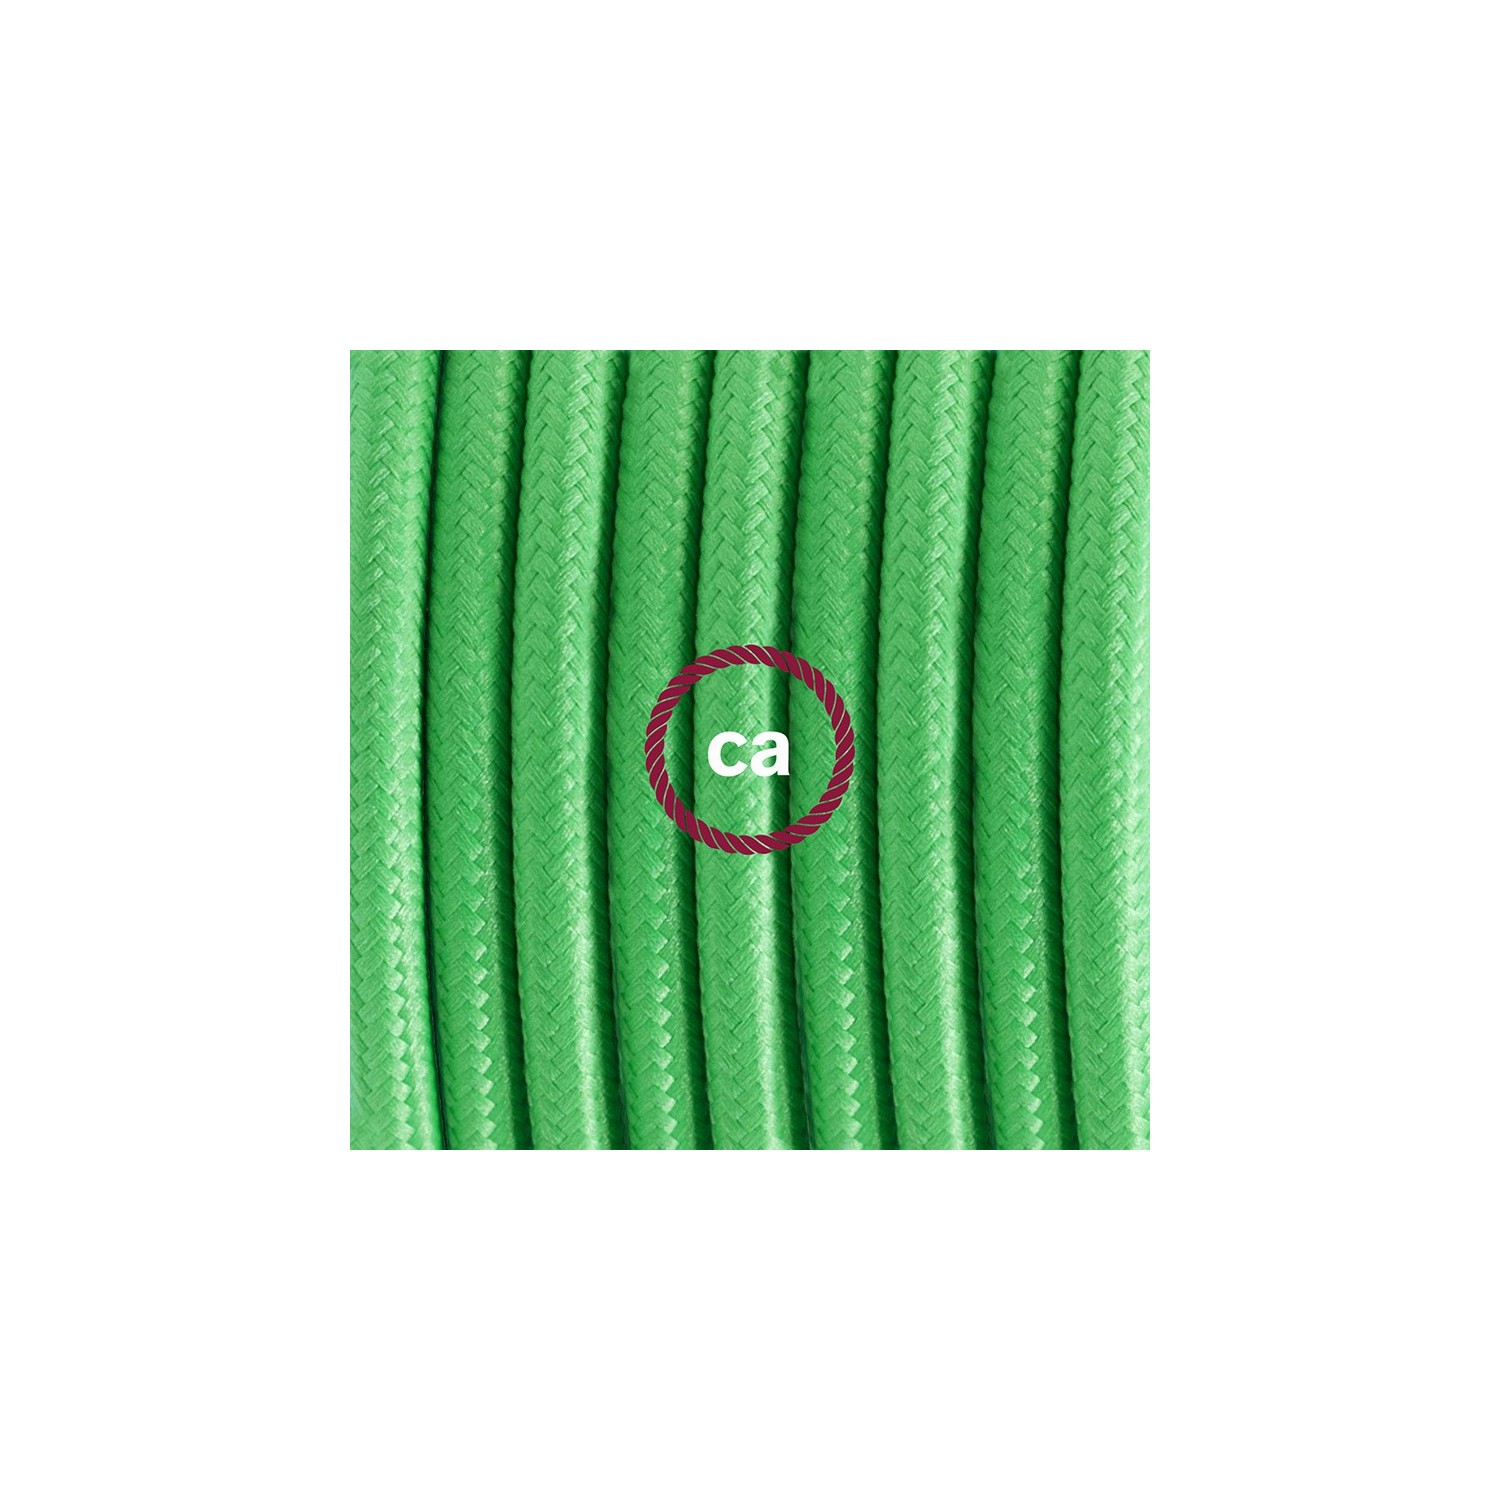 Komplet s talnim stikalom, RM18 limeta zelen rejon 3 m. Izberite barvo vtikača in stikala.